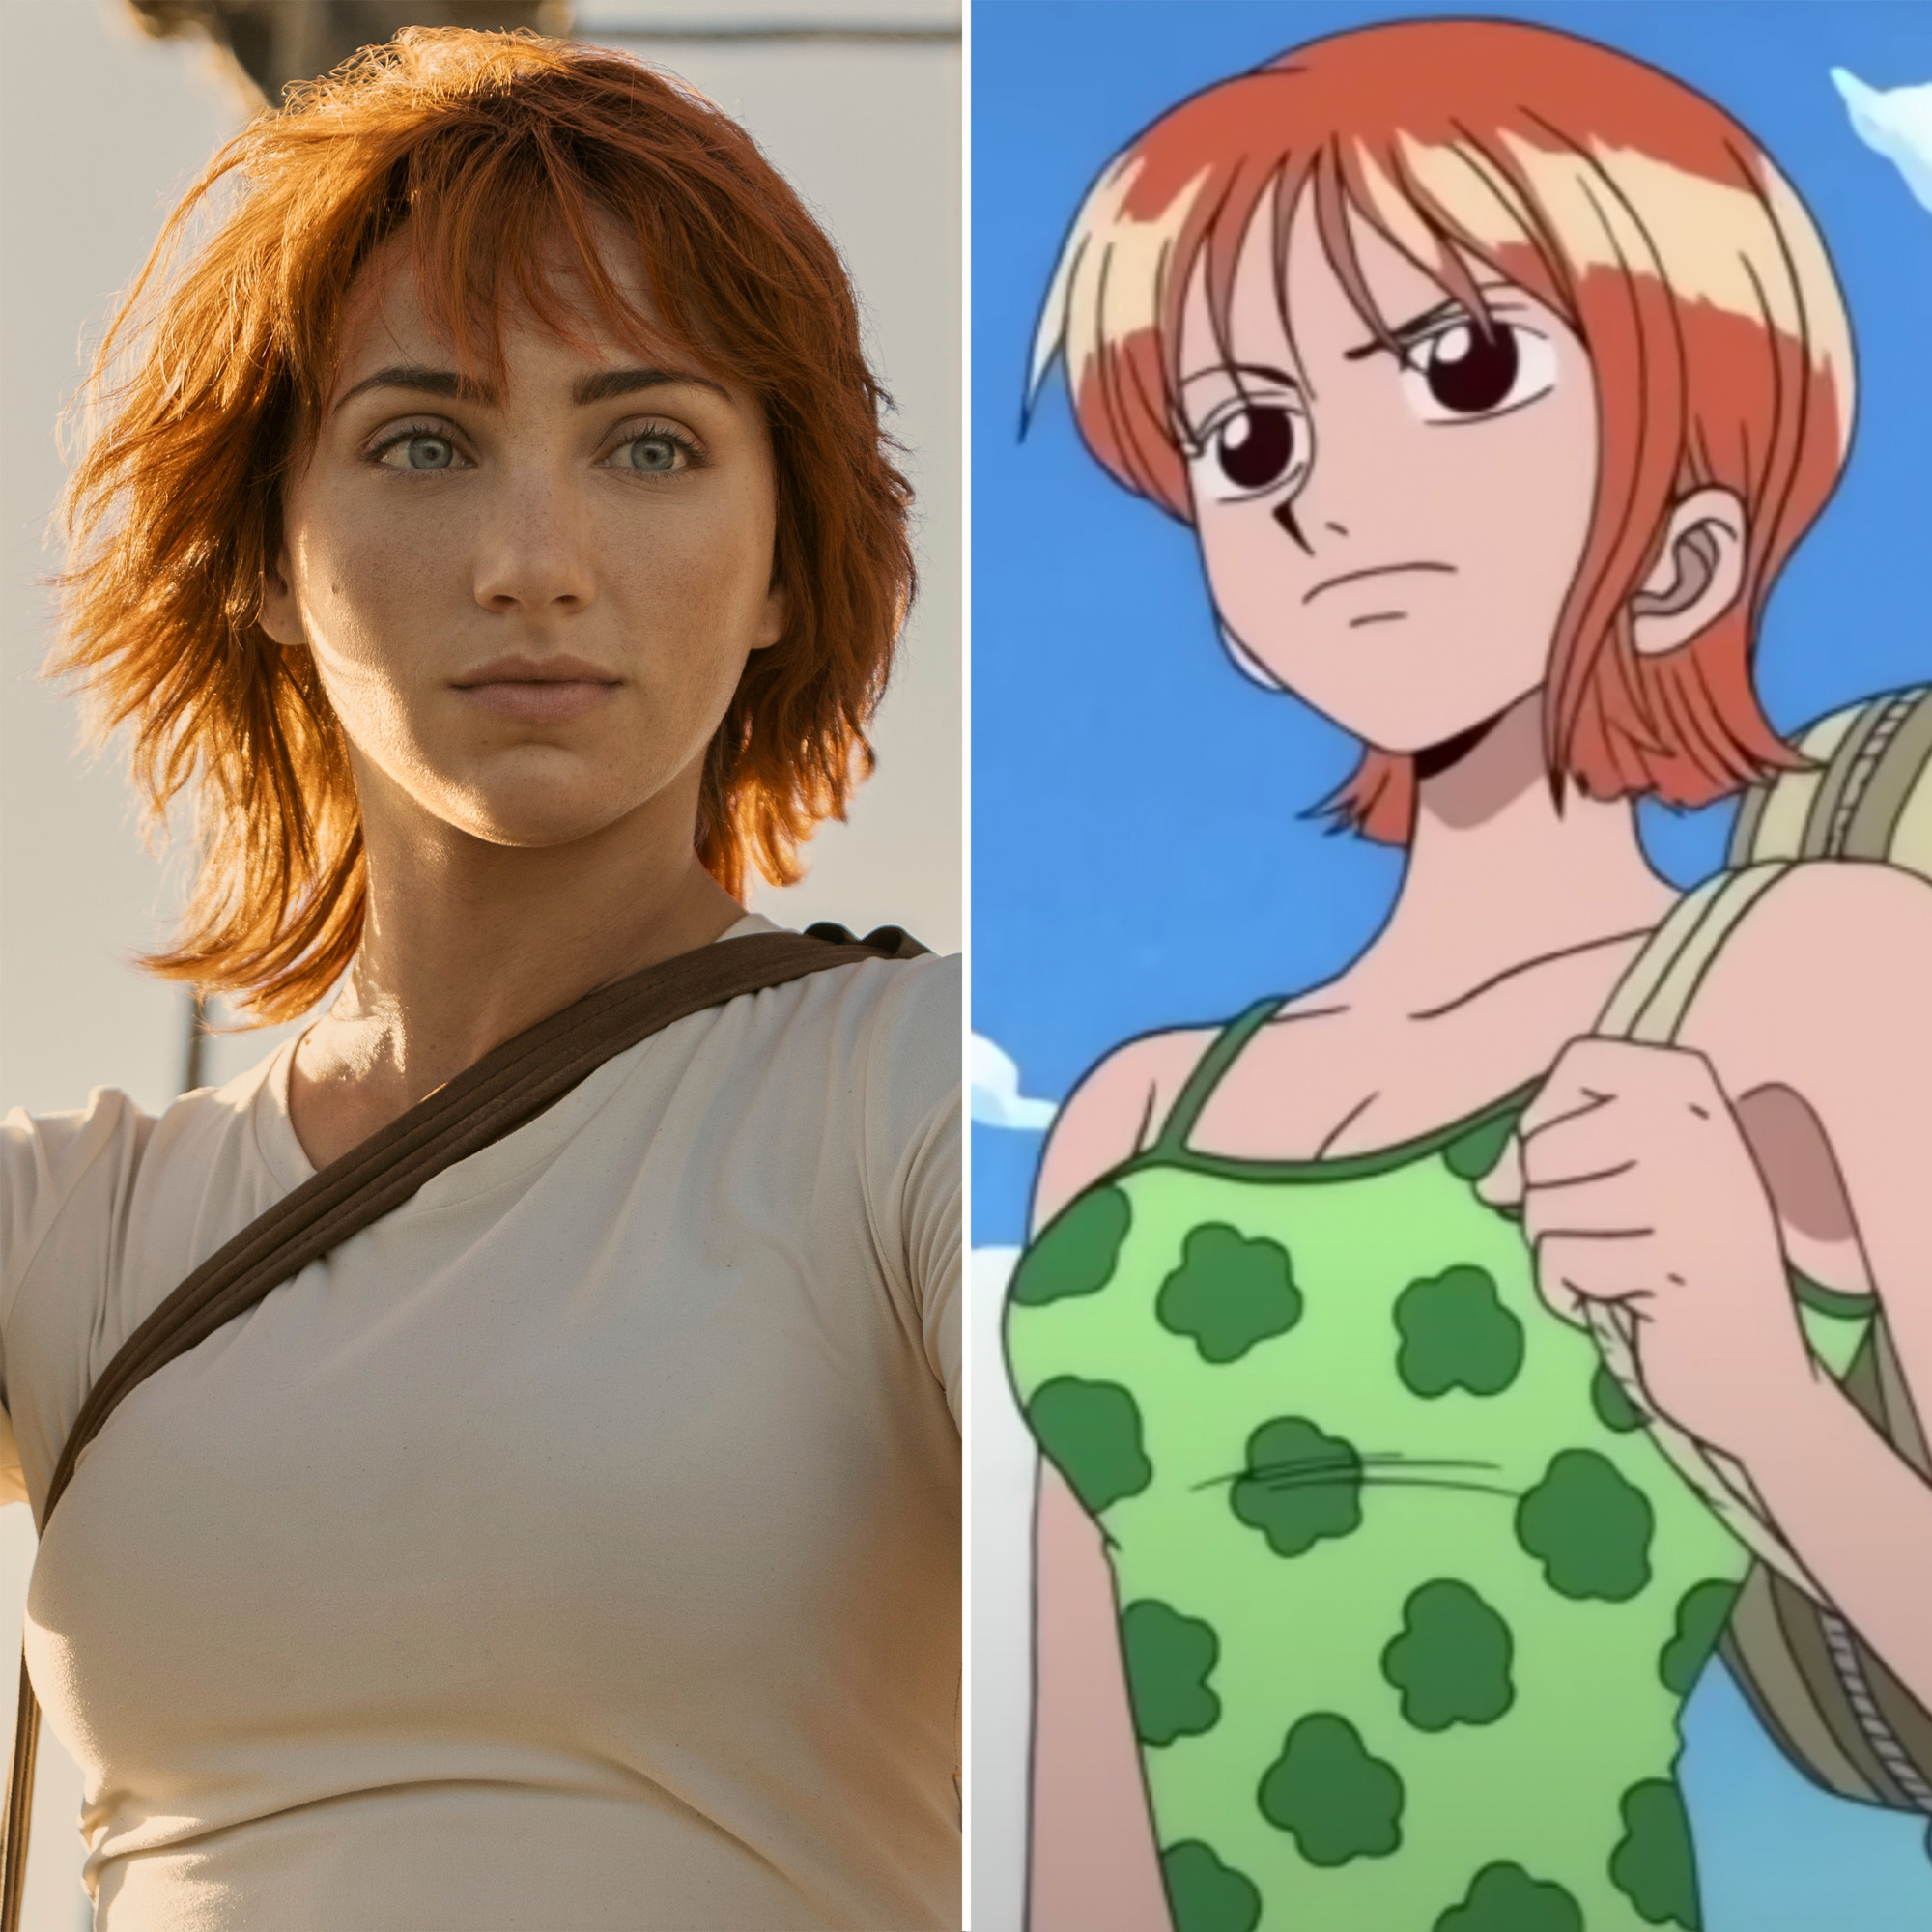 One Piece Cast Photos: How Live-Action Netflix Adaptation Compares to  Original